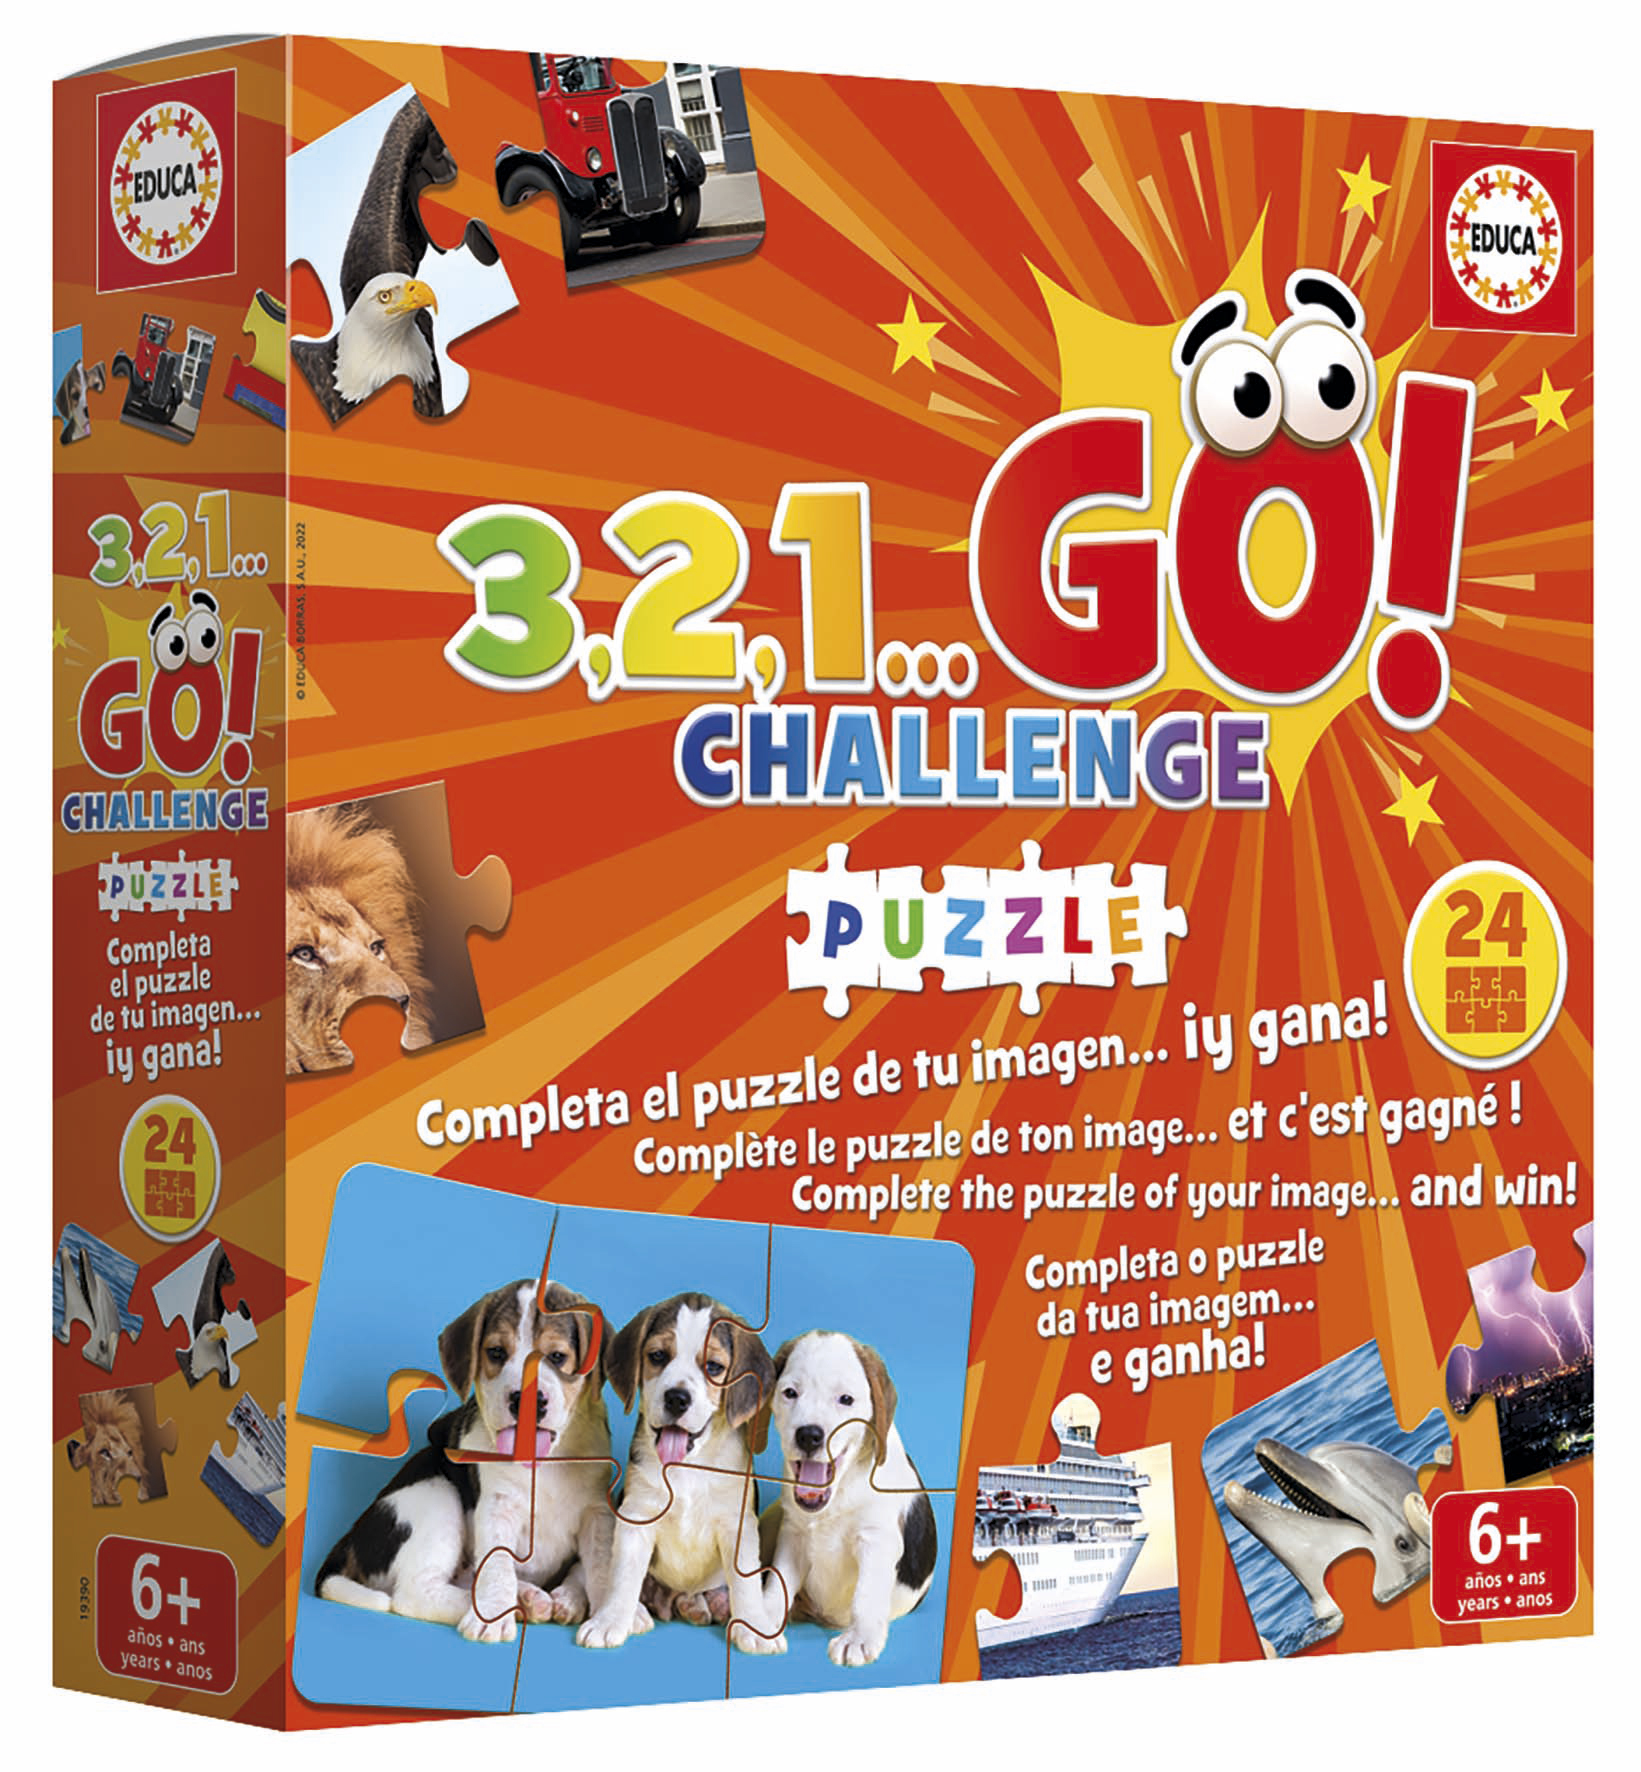 On-the-go puzzle caras - 1 ano, Brinquedos, Primeiros Puzzles e Jogos,  Puzzles - Bazar33